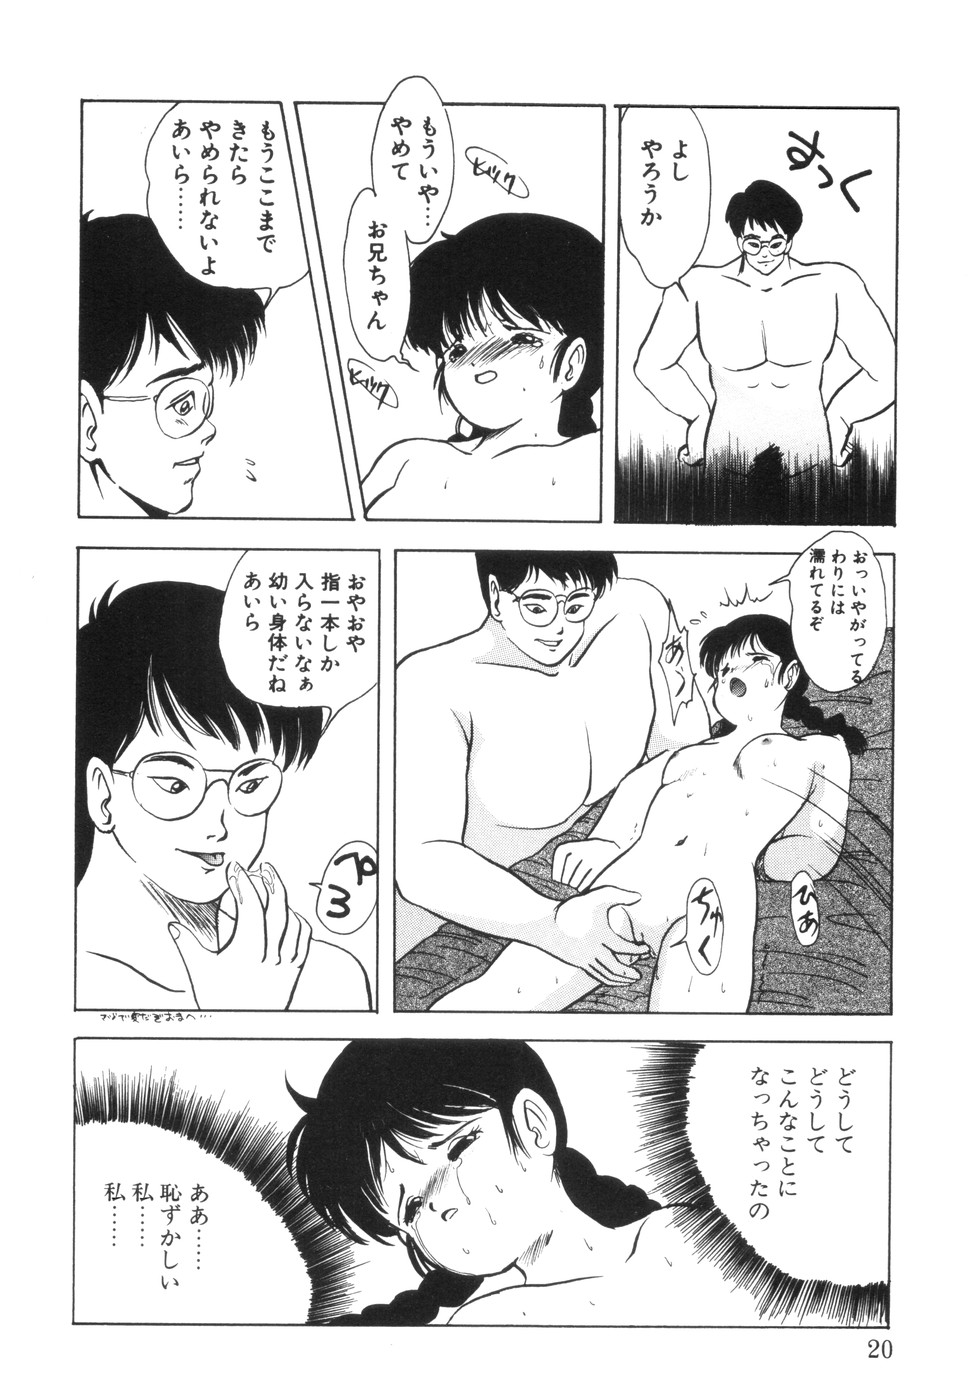 [影夢優] 遊裸戯-妹愛奴- [1995-08-30]